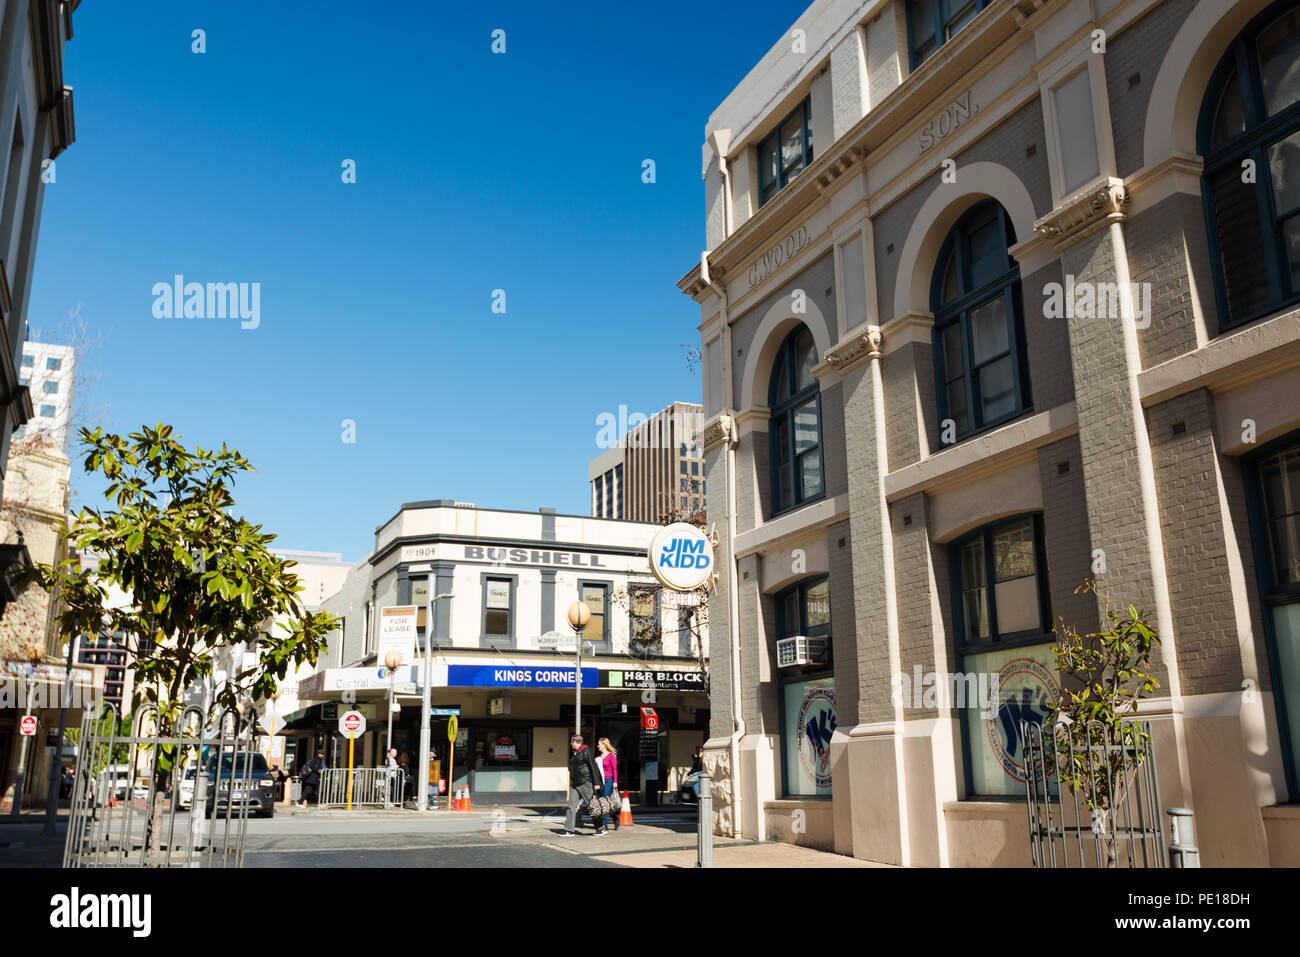 Le persone che attraversano una strada dopo lo shopping, a King Street nel centro di Perth Western Australia, Oceania Foto Stock